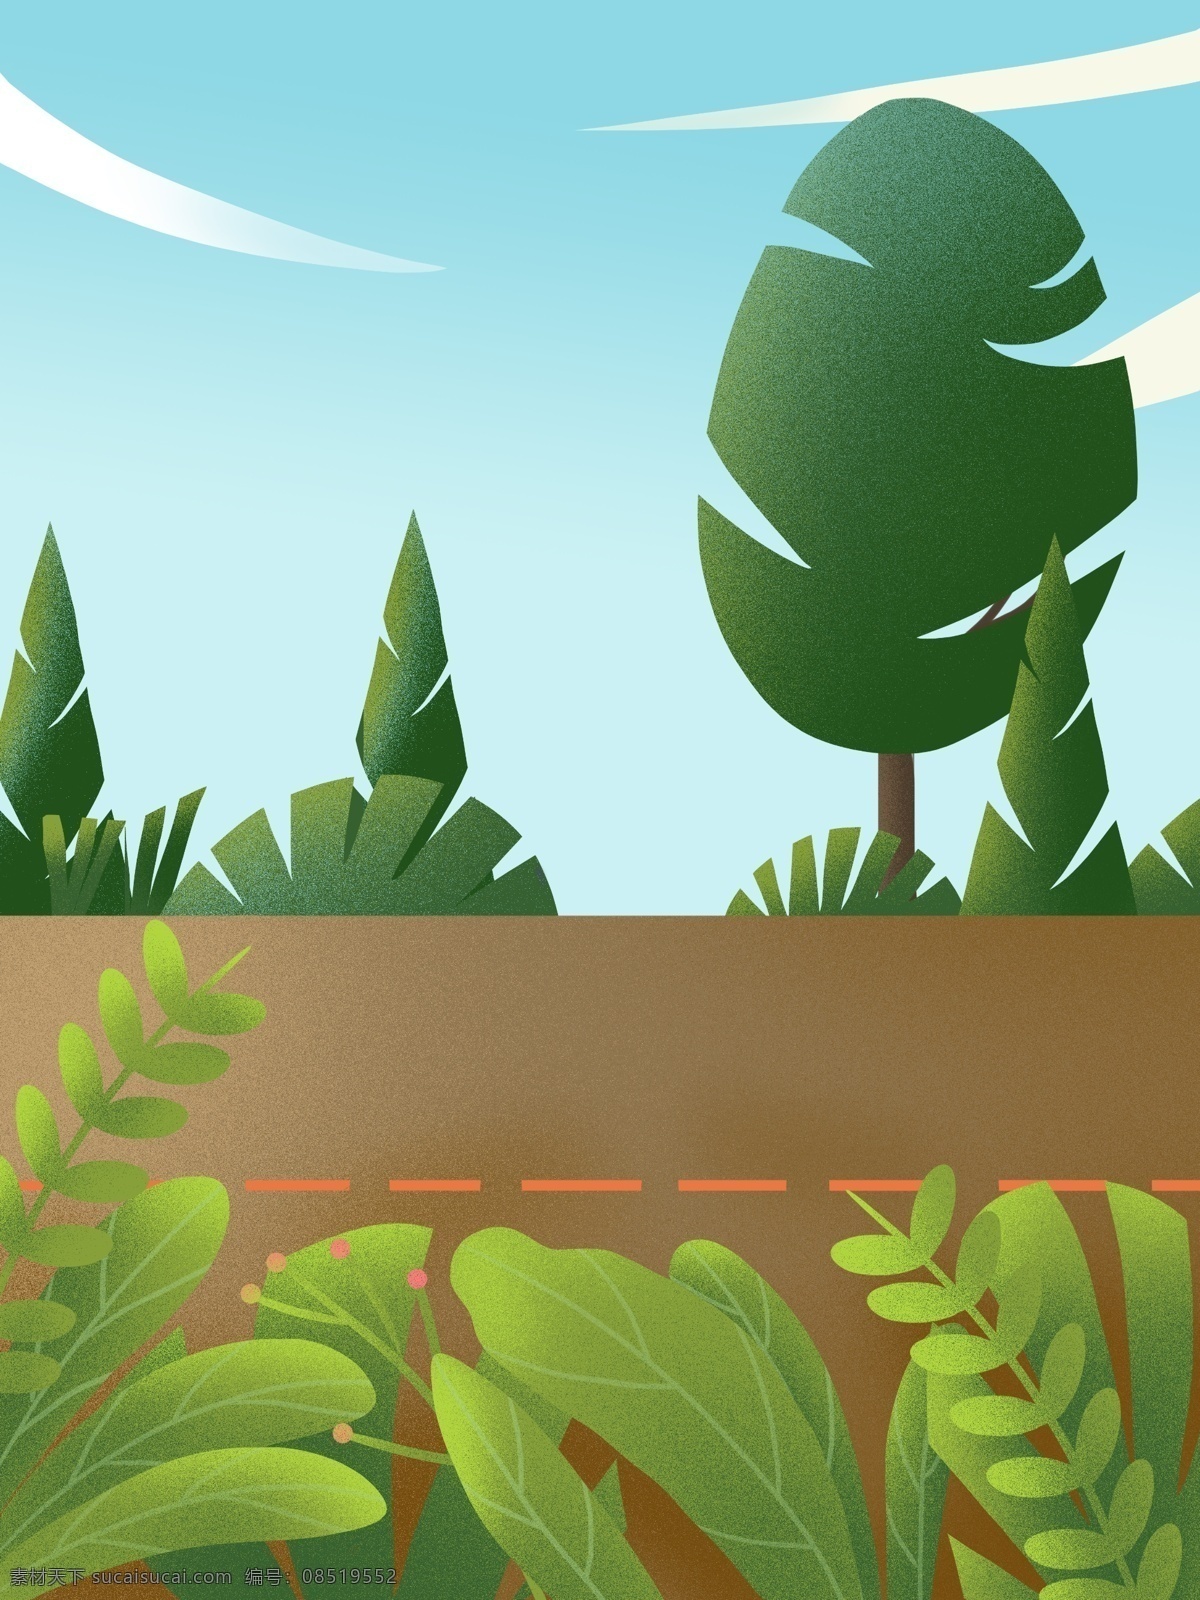 户外 风景 绿色 天空 道路 植物 卡通 彩色 创意 装饰 背景 设计背景 海报背景 简约 图案